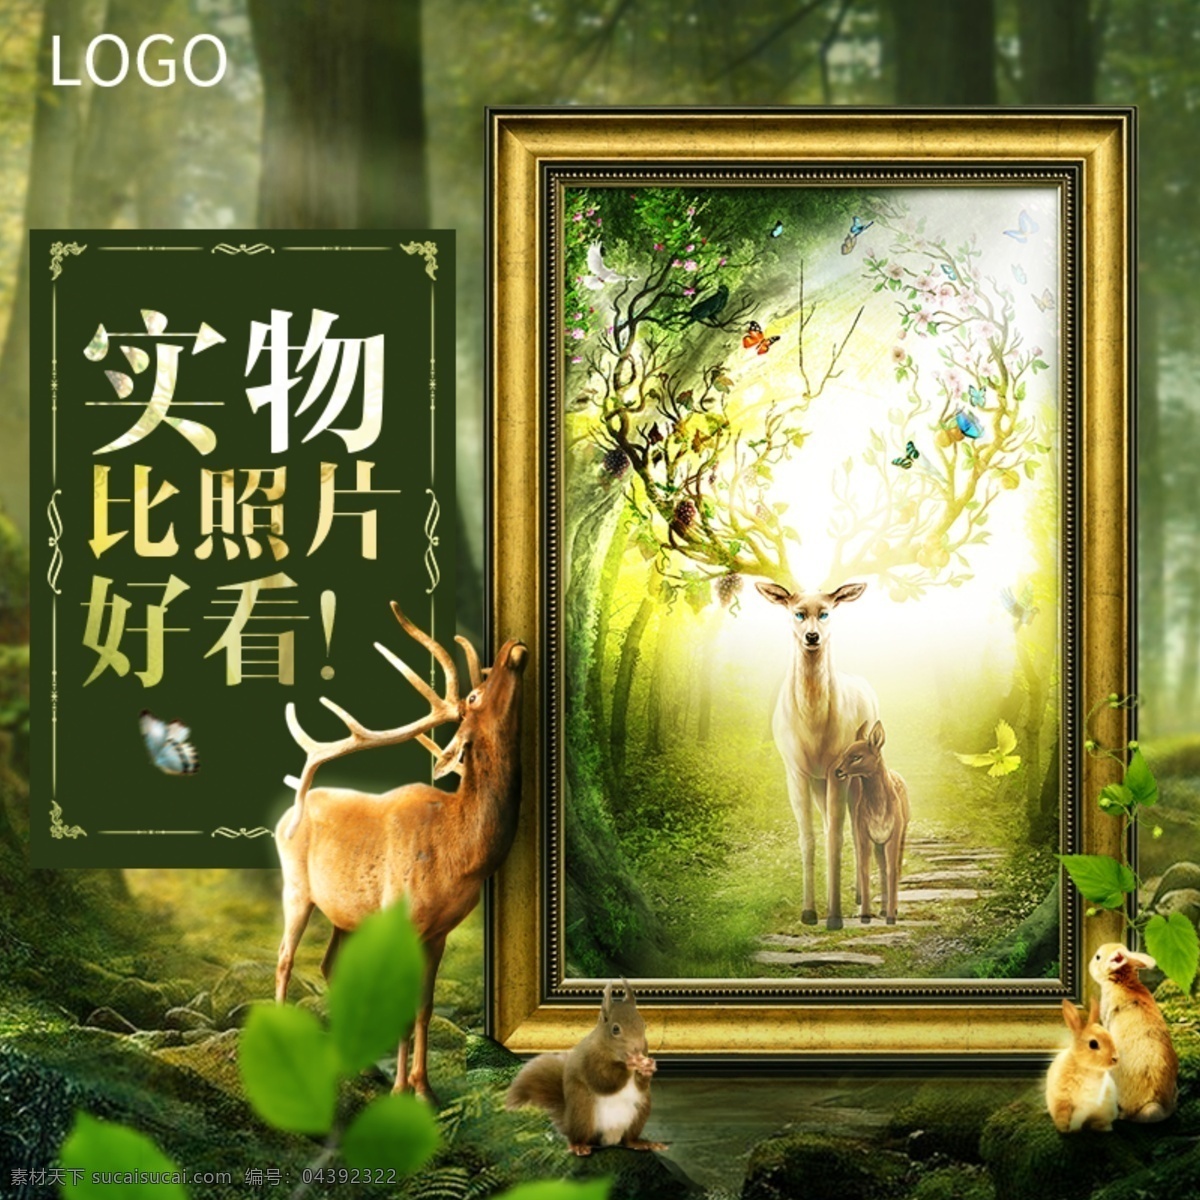 自然 风格 挂画 直通车 图 森林 麋鹿 装饰画 美式 古典